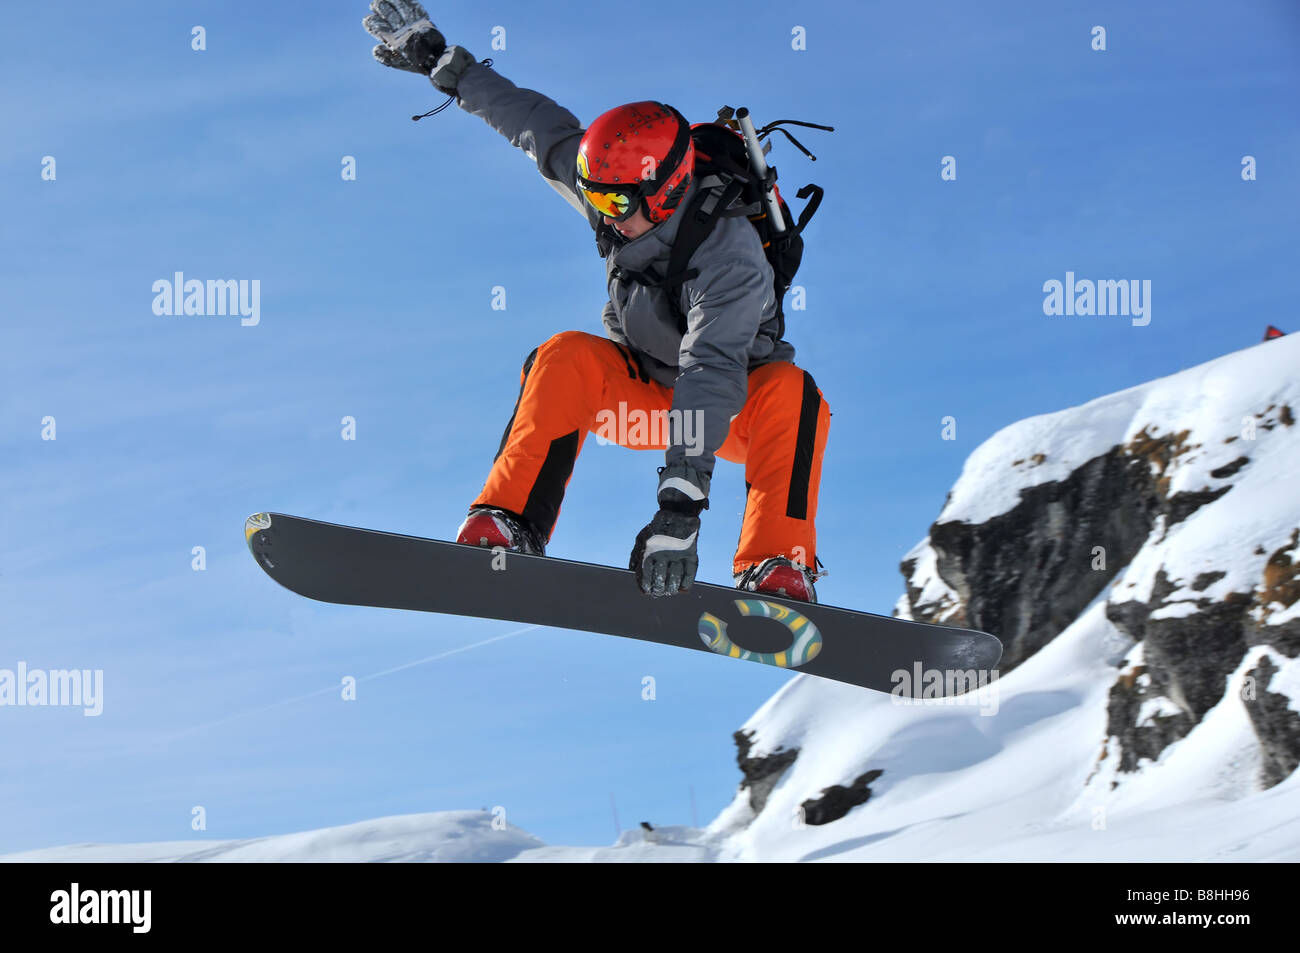 Snowboard jump immagini e fotografie stock ad alta risoluzione - Alamy